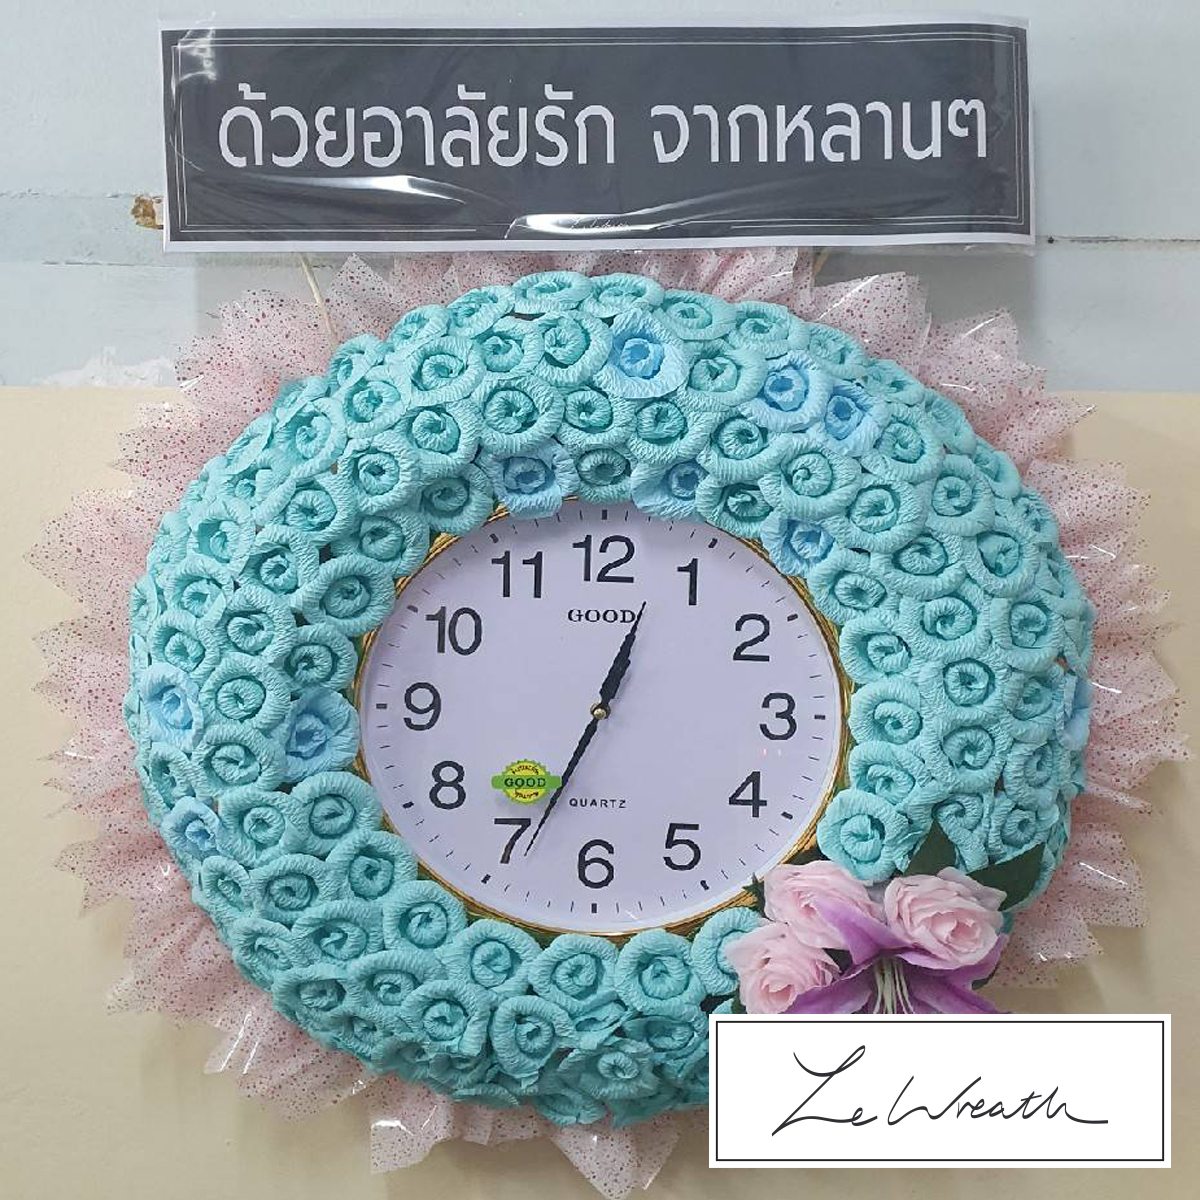 พวงหรีดนาฬิกาตกแต่งอย่างสวยงามด้วยดอกไม้จันทน์ประดิษฐ์โทนสีฟ้า เหมาะแก่การไว้อาลัยทุกประเภท